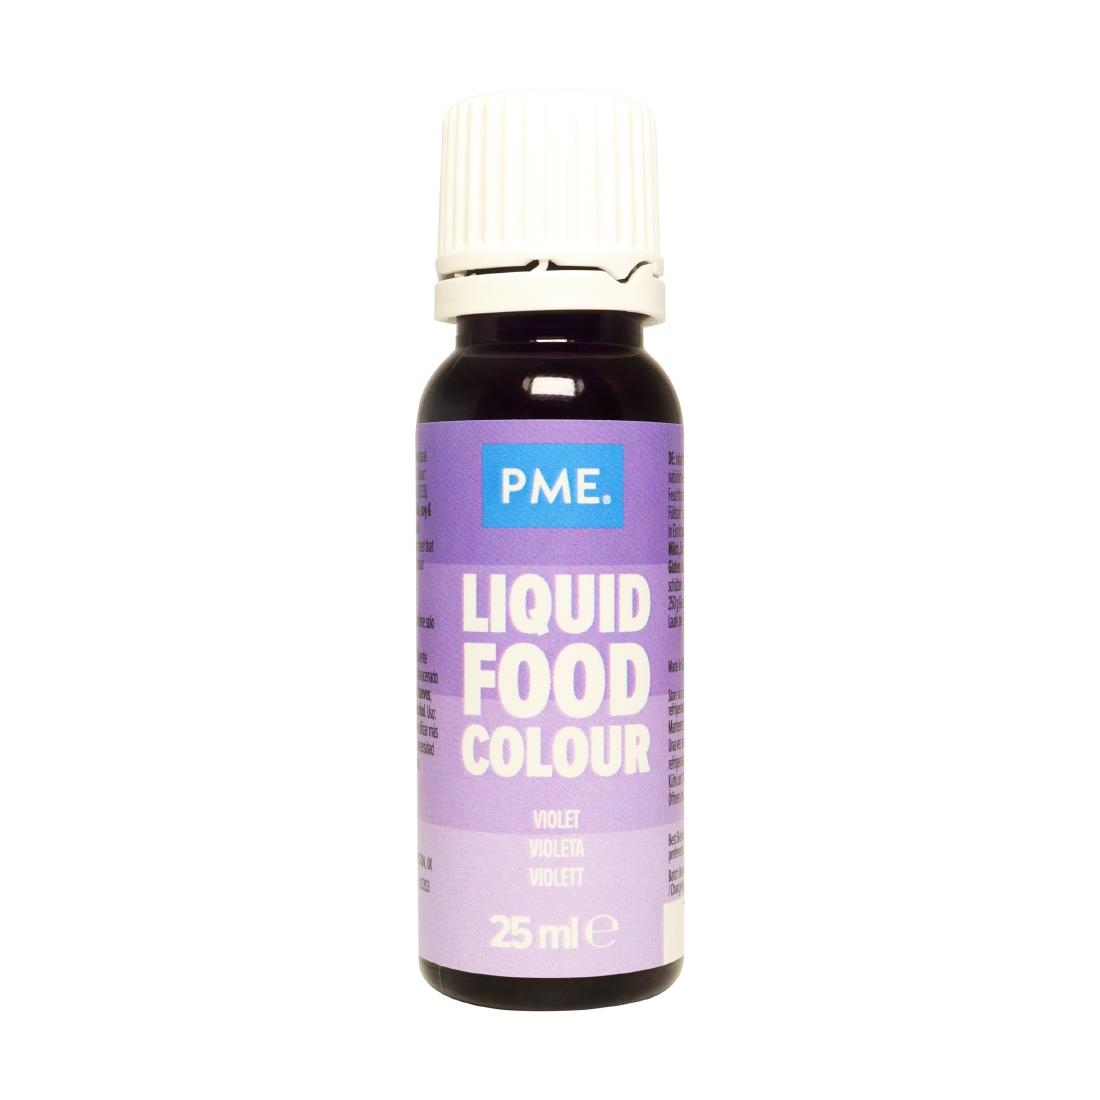 PME Food Colours 25g - Violet (HU274)